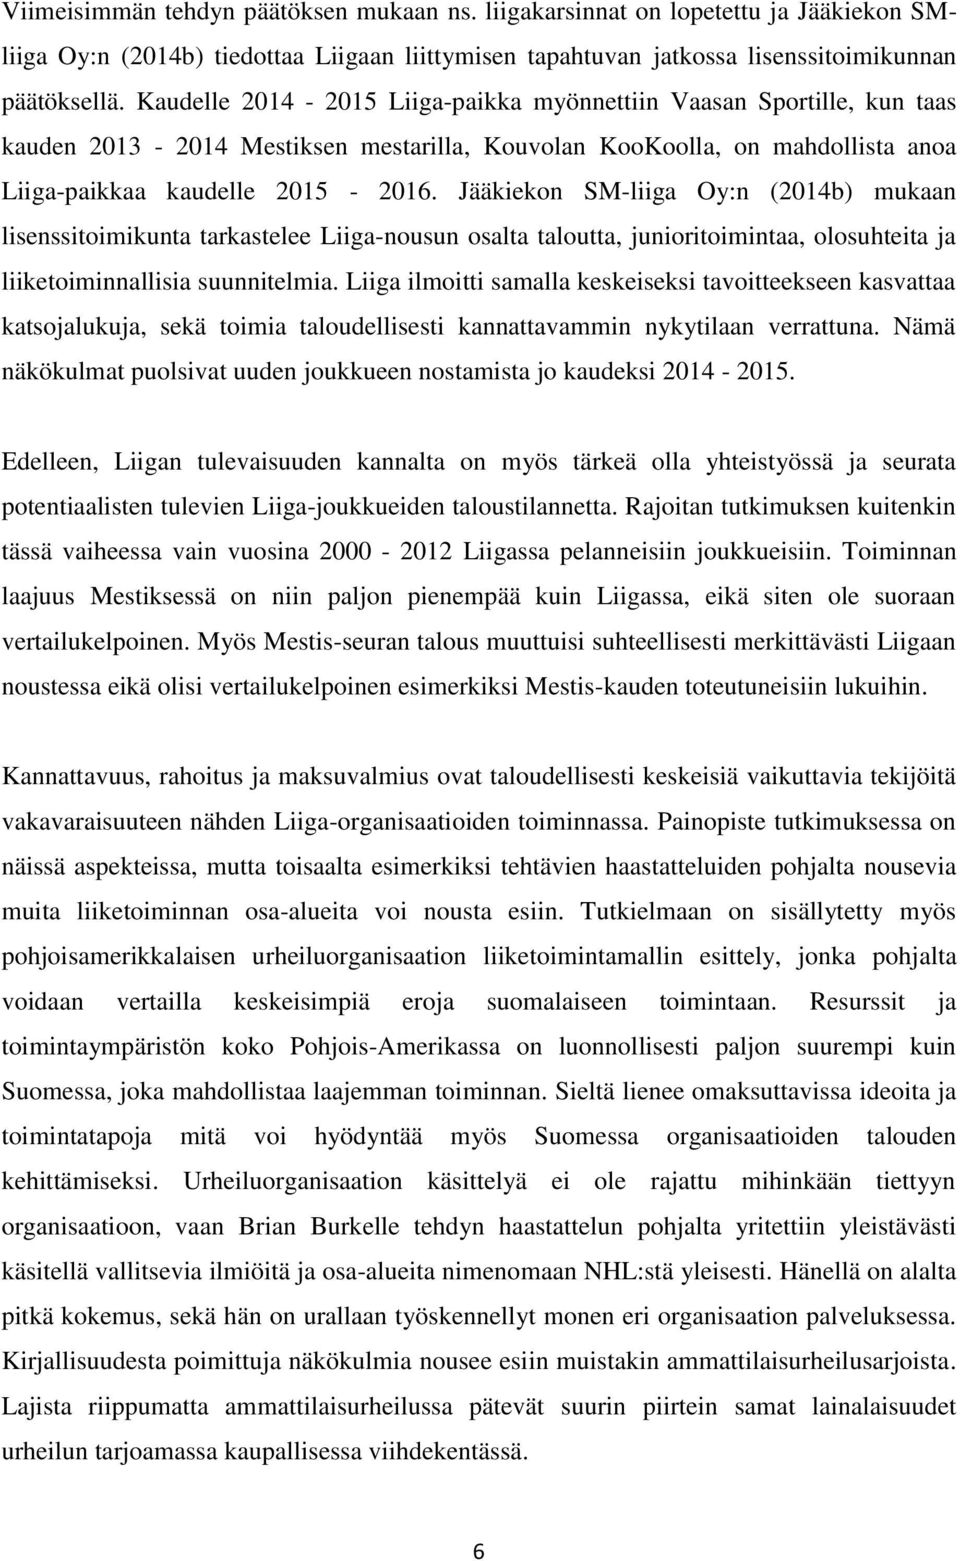 Jääkiekon SM-liiga Oy:n (2014b) mukaan lisenssitoimikunta tarkastelee Liiga-nousun osalta taloutta, junioritoimintaa, olosuhteita ja liiketoiminnallisia suunnitelmia.